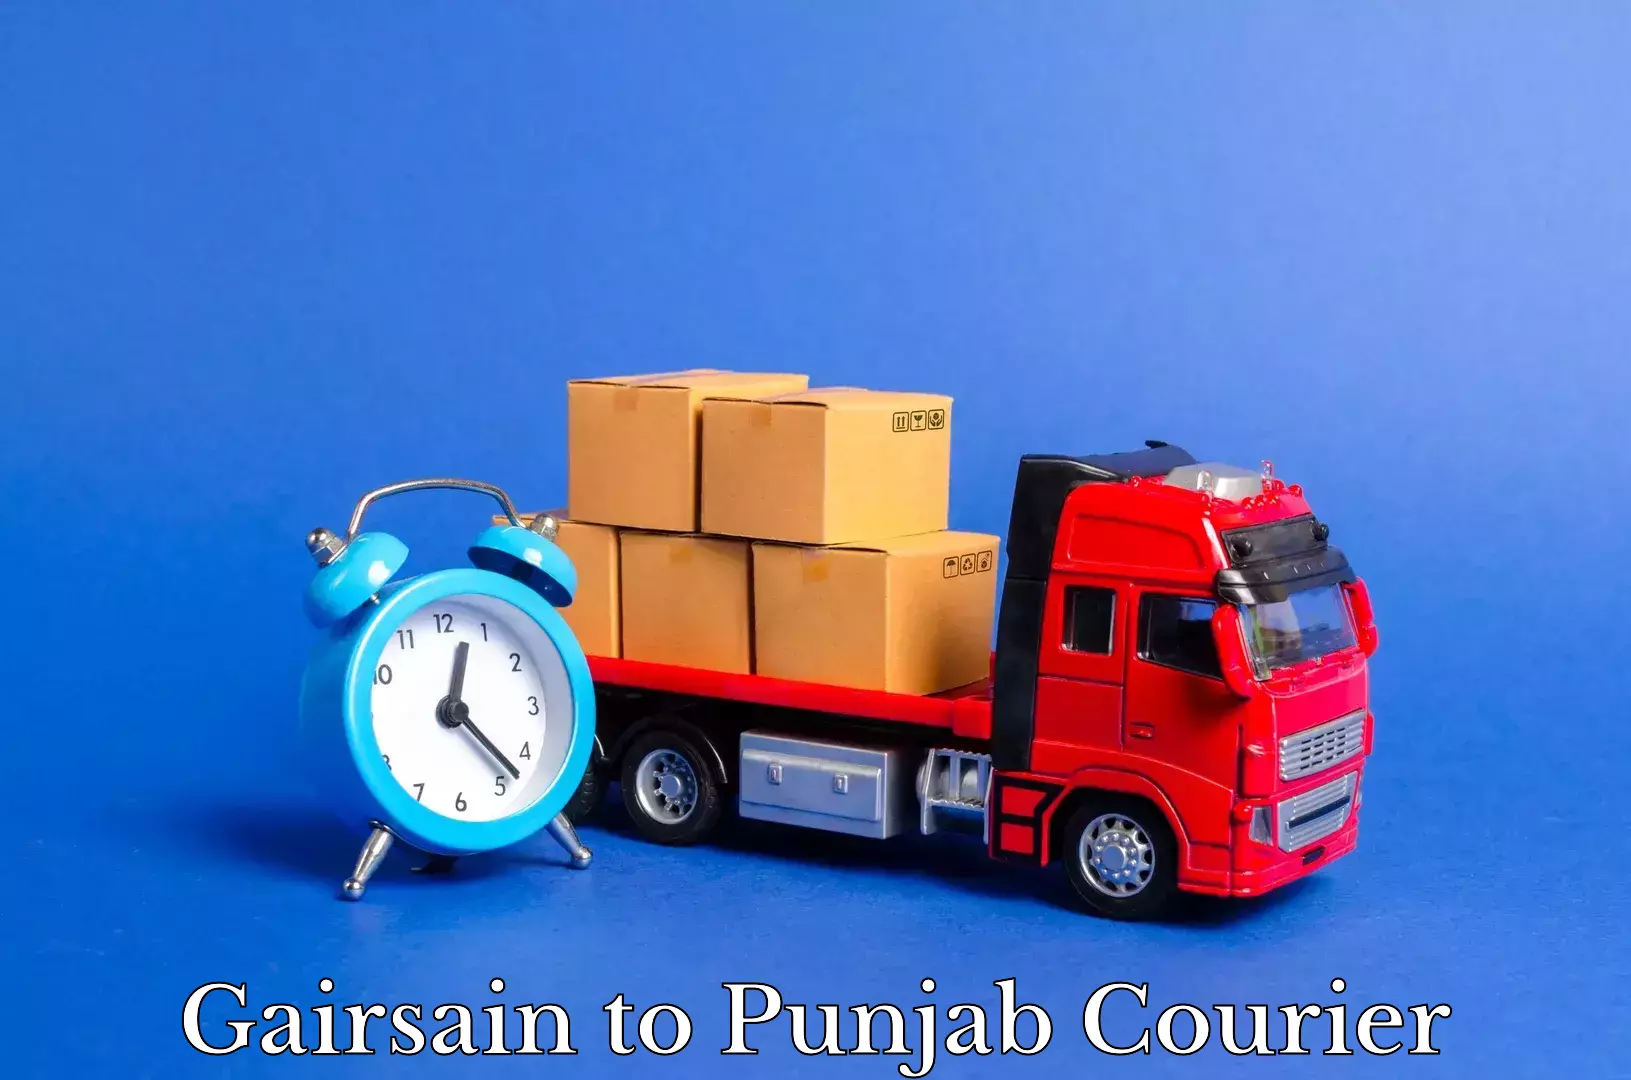 Furniture moving experts Gairsain to Punjab